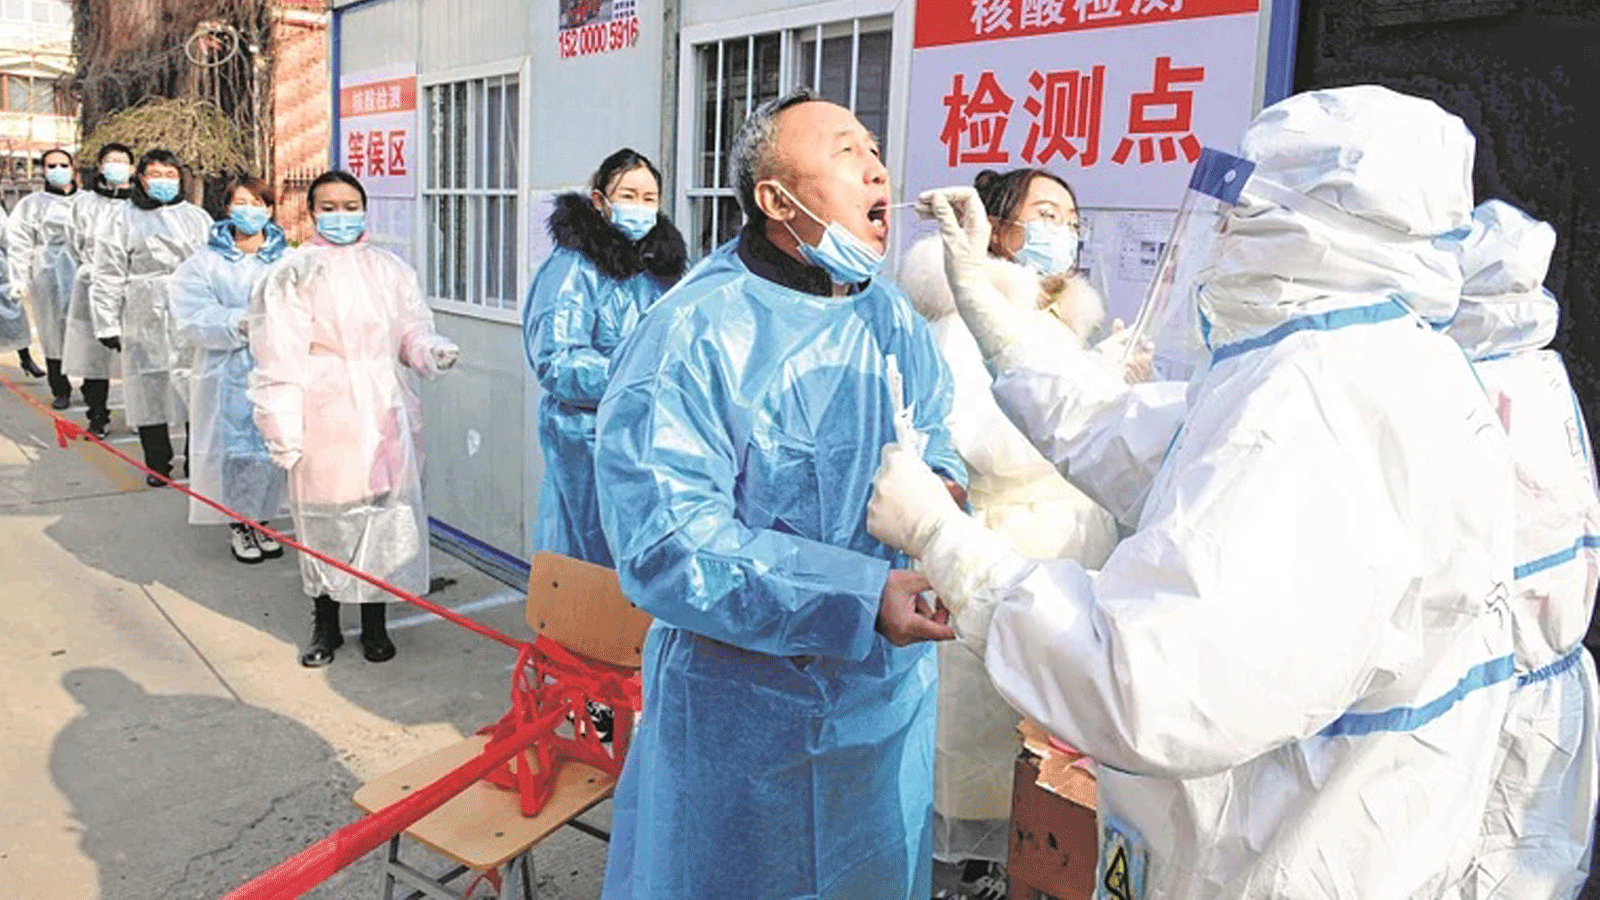 سكان يخضعون لاختبارات Covid-19 في مقاطعة خبي شمال الصين